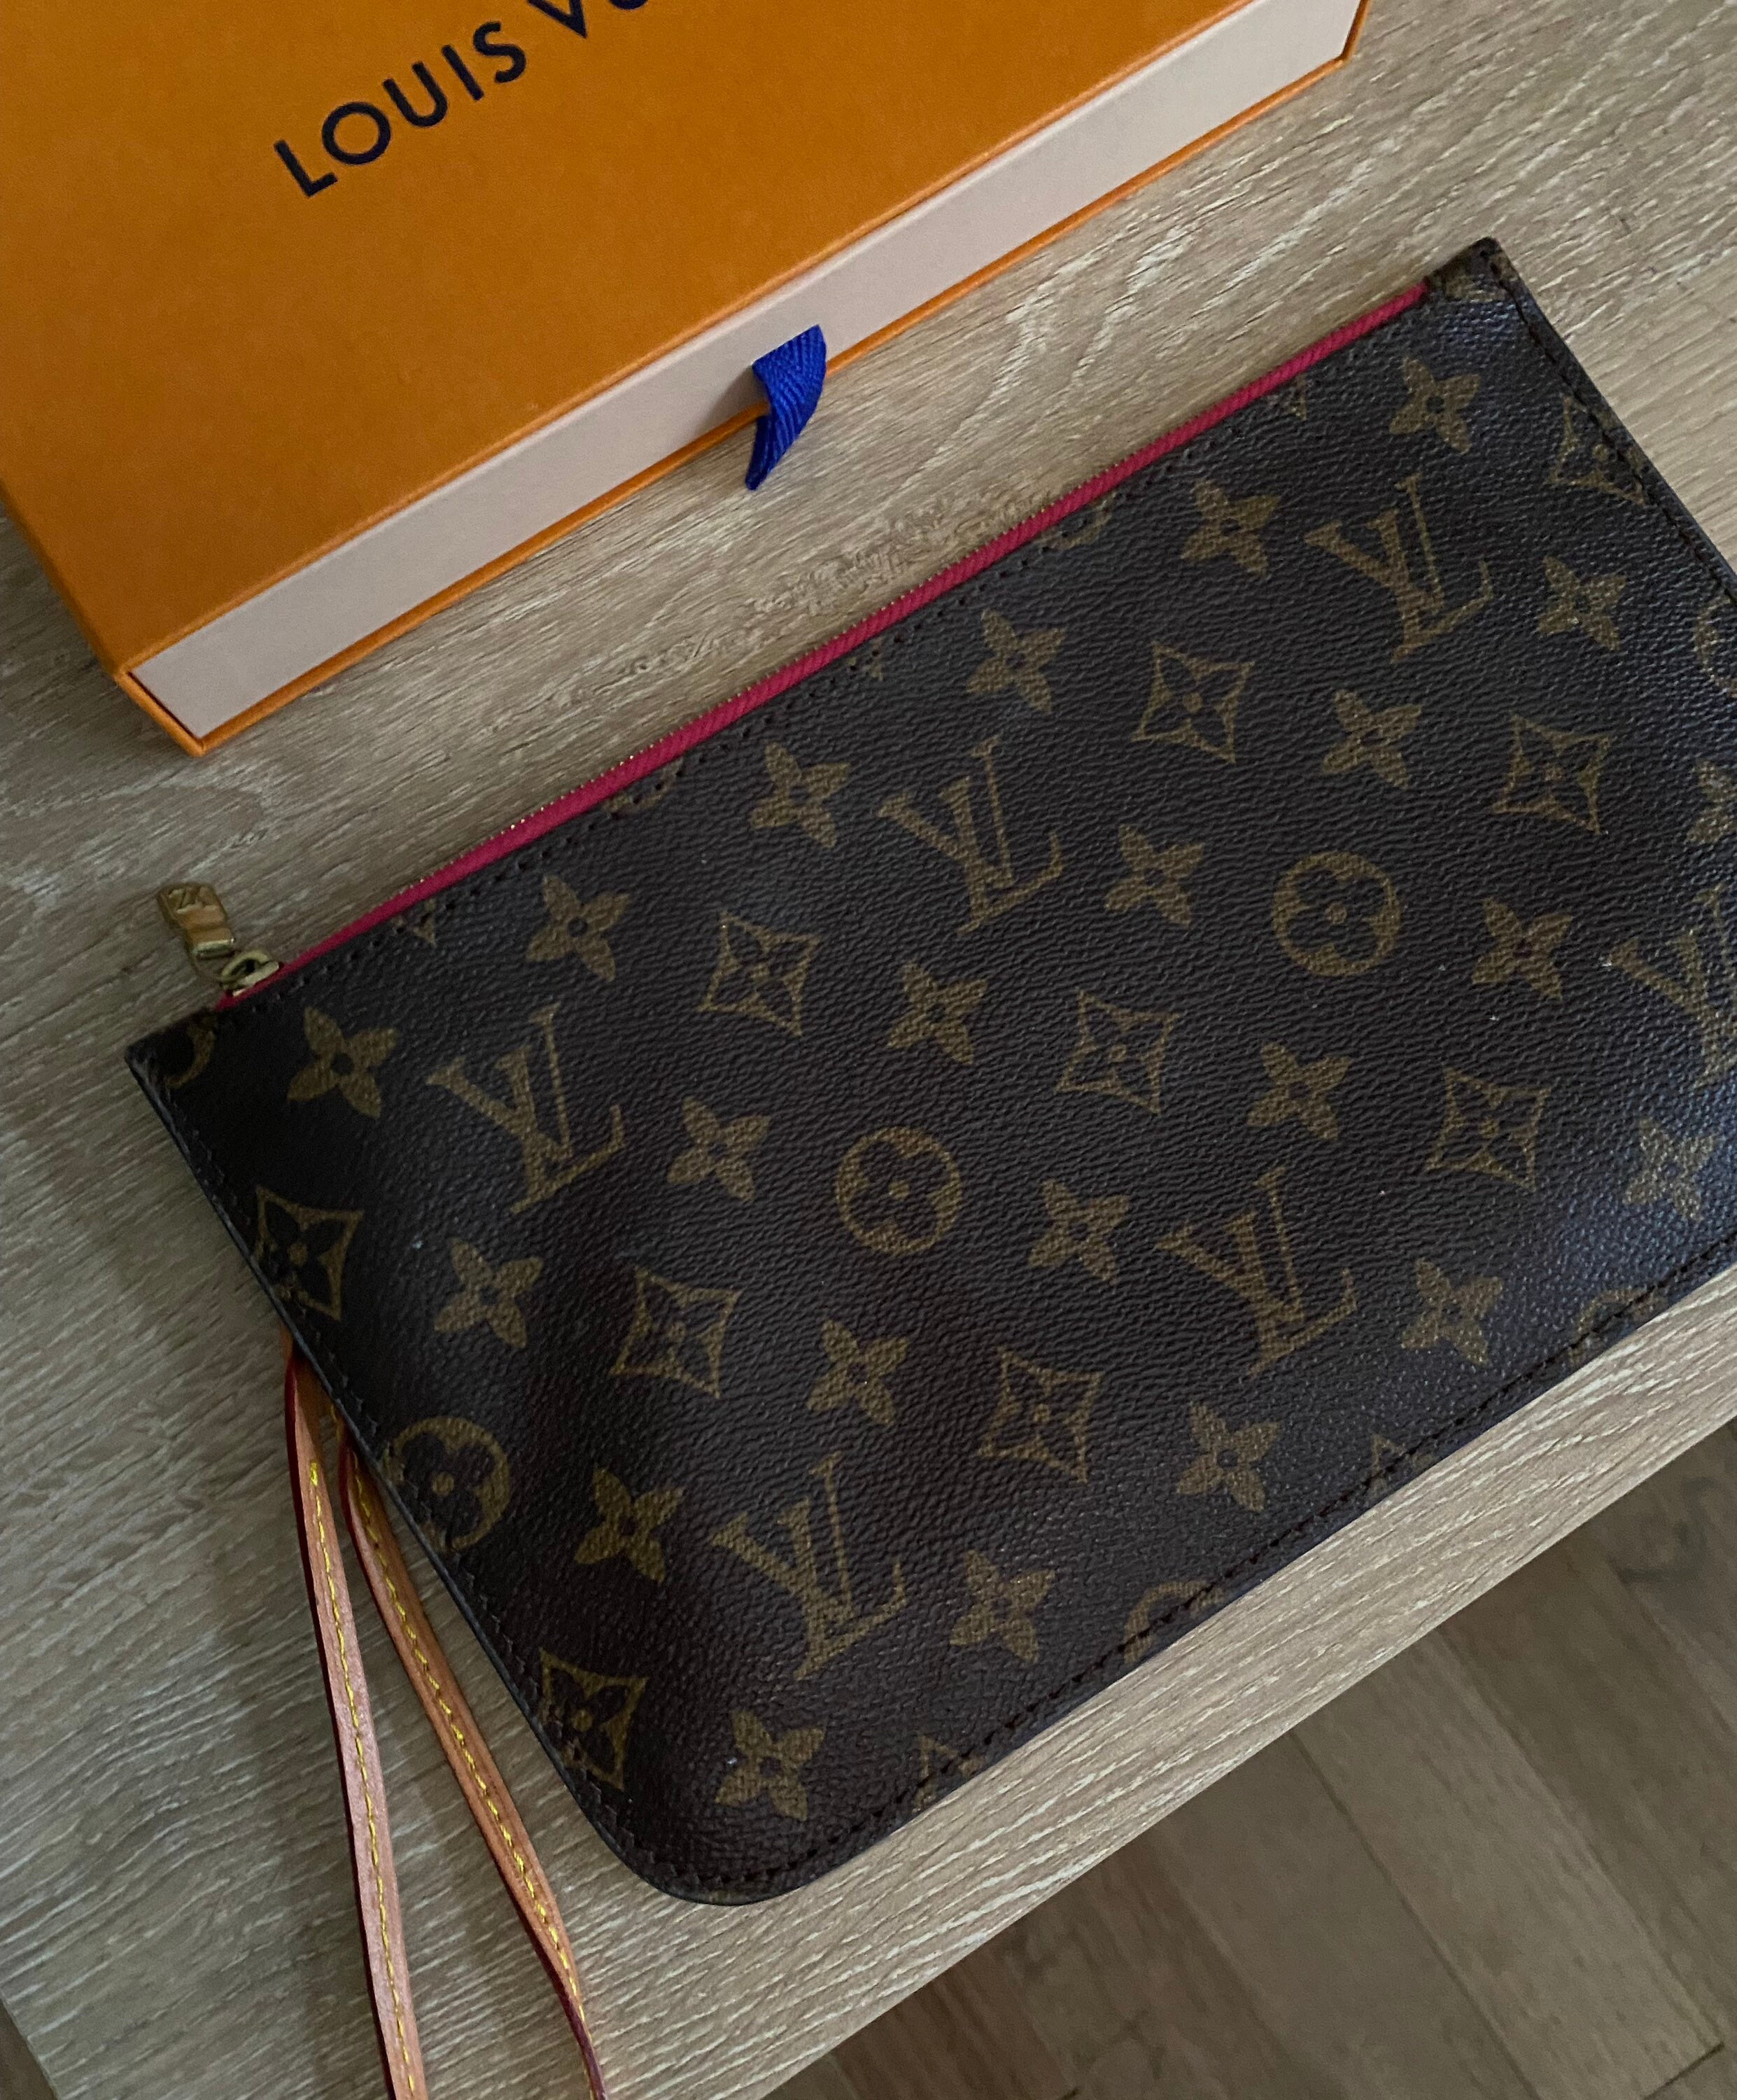 Louis Vuitton Neverfull Monogram Canvas Pochette Wristlet Zip Pouch ONLY  *No Bag